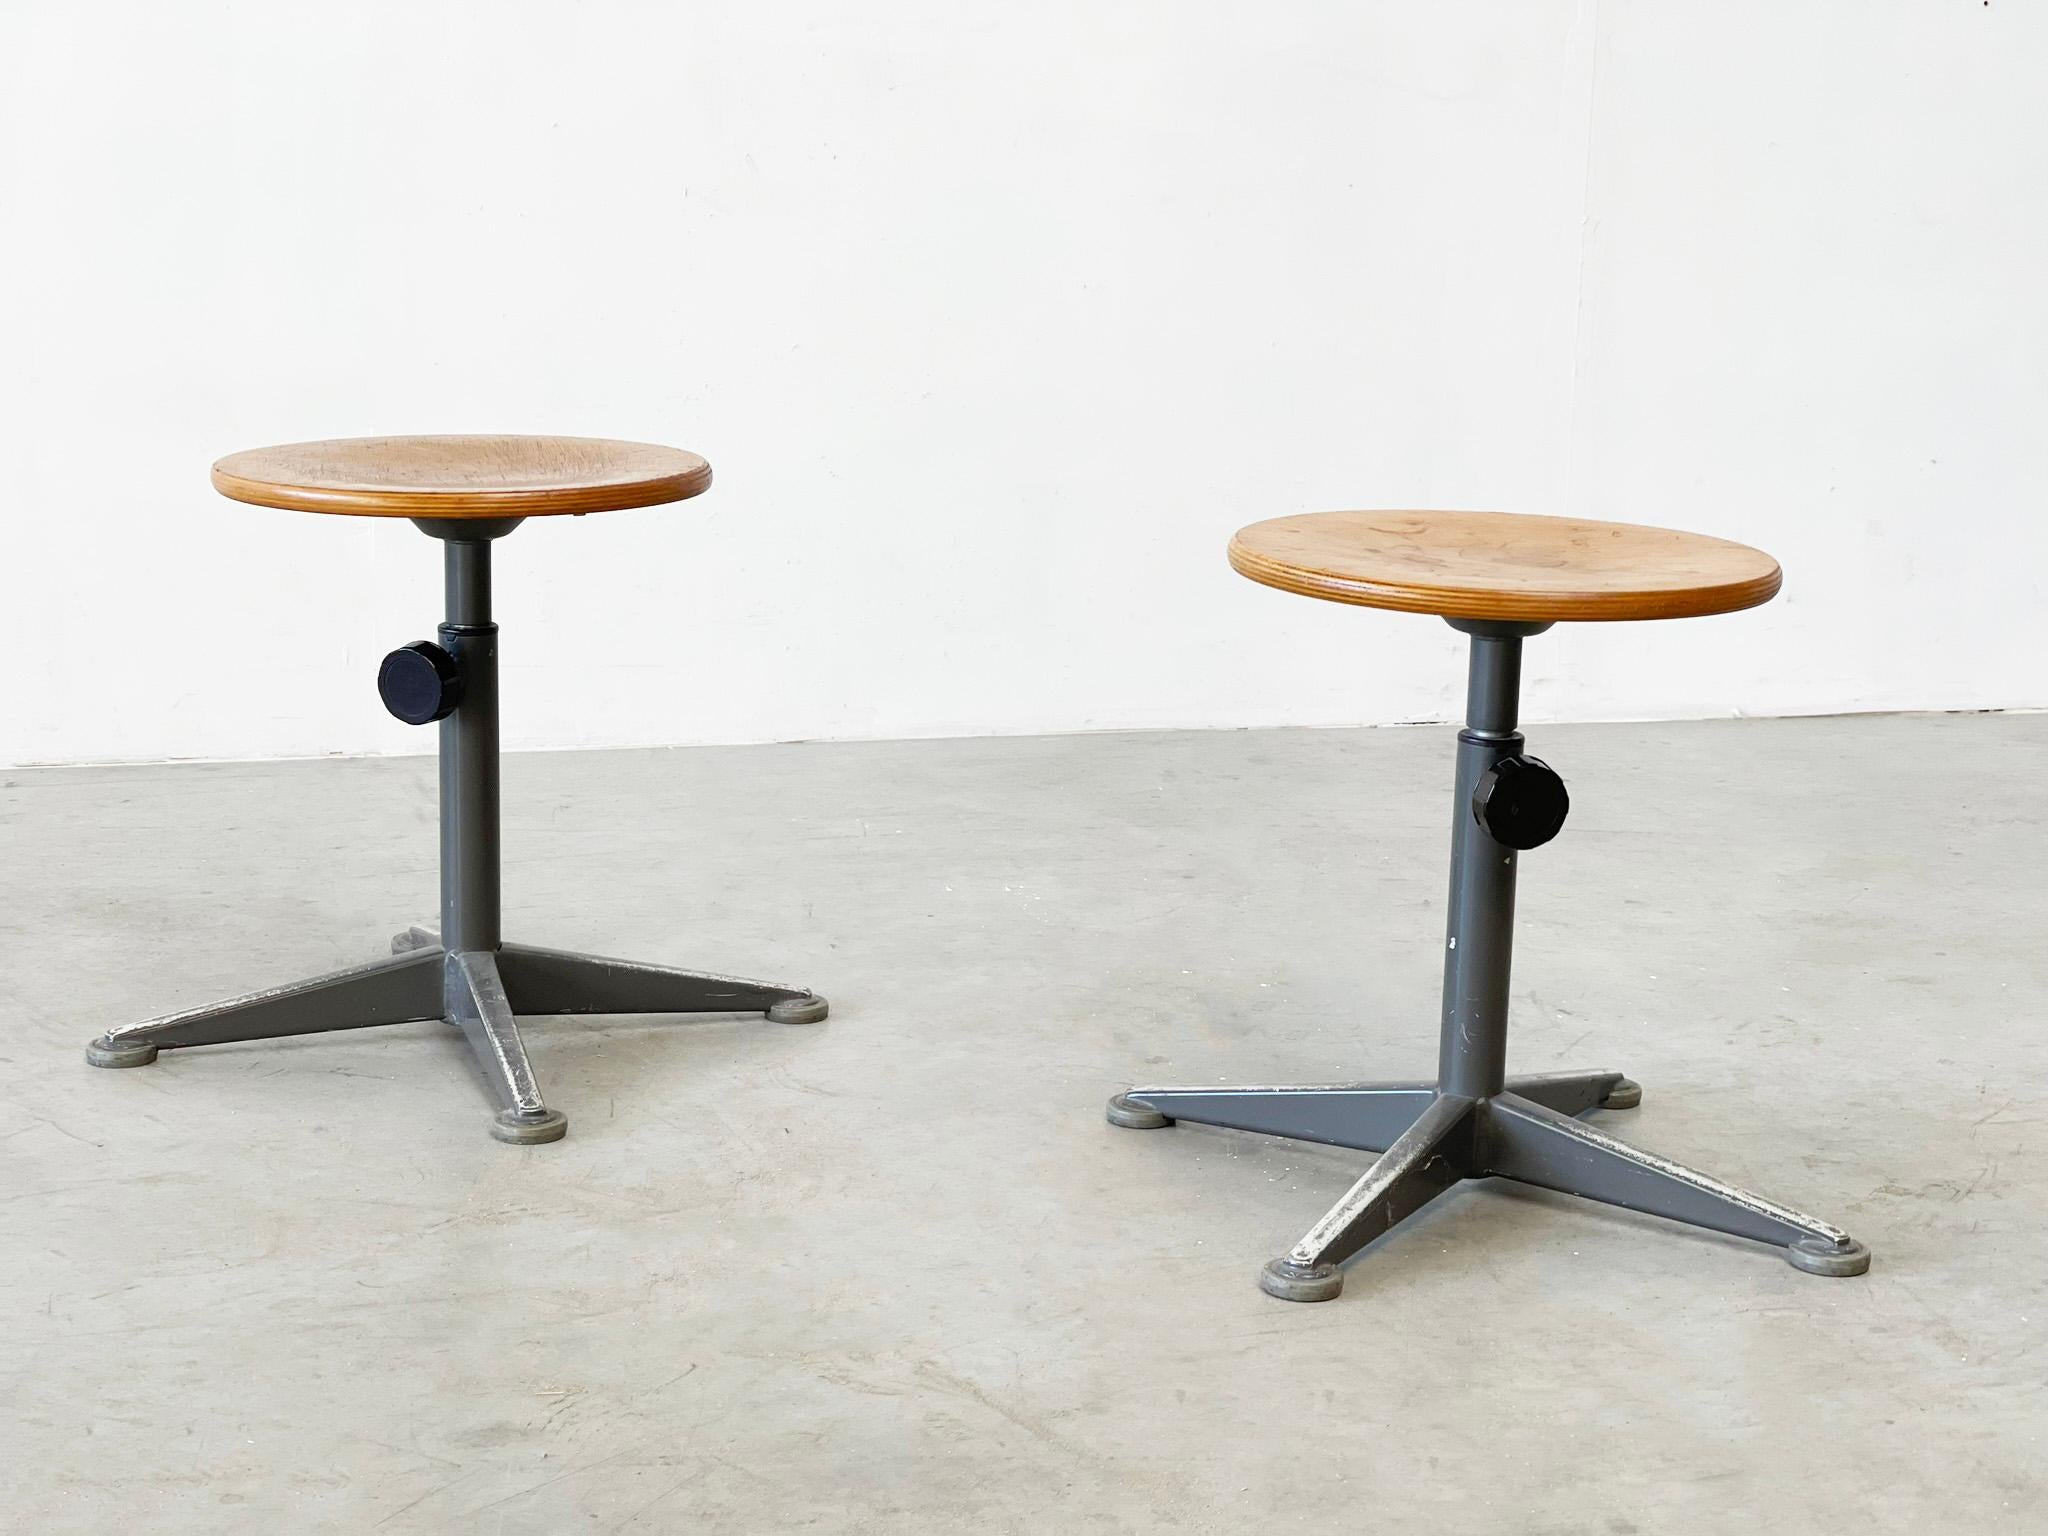 Ensemble de deux tabourets Friso Kramer
Ces chaises industrielles ont été conçues dans les années 1950 par Friso Kramer et fabriquées par Ahrend de circle. Friso Kramer était connu pour l'élégance et la beauté de son design industriel. Les chaises